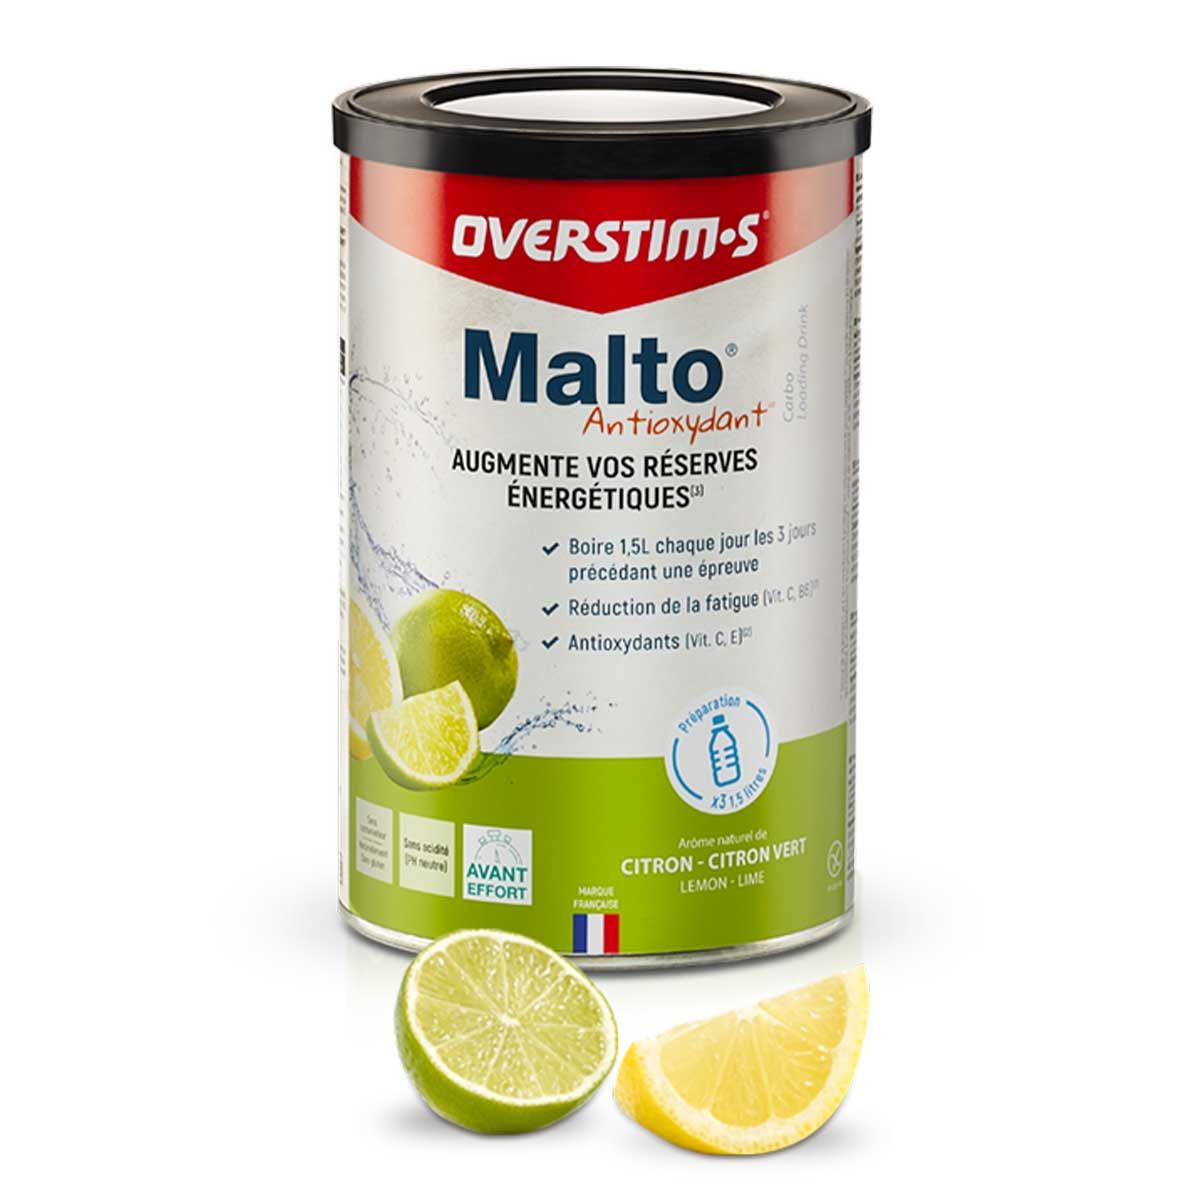 Overstim.s antioxydant Malto - 450g - Lemon, lime